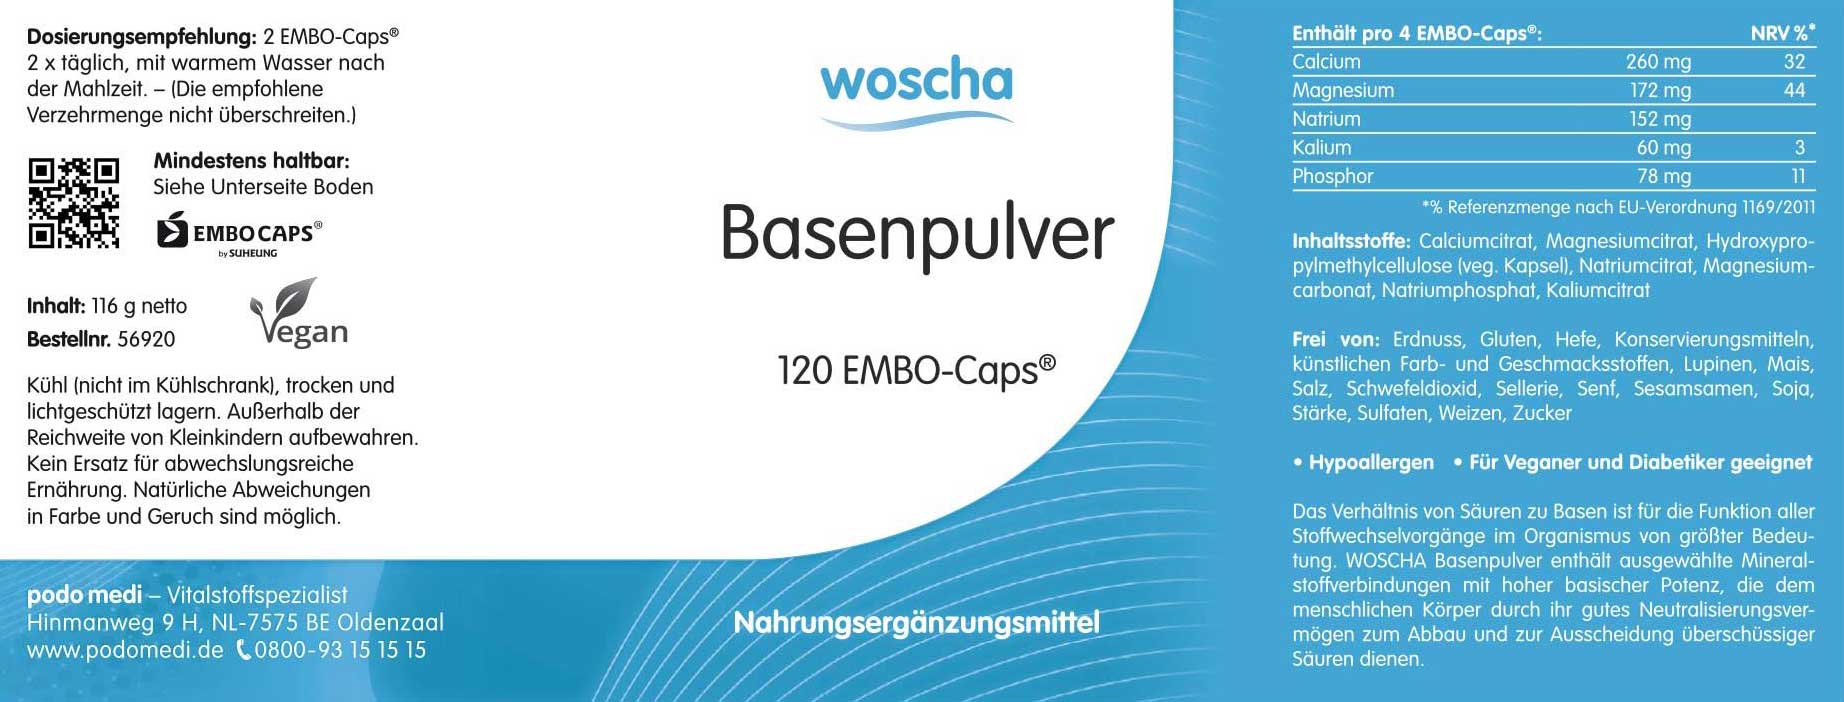 Woscha Basenpulver von podo medi beinhaltet 120 Kapseln Etikett